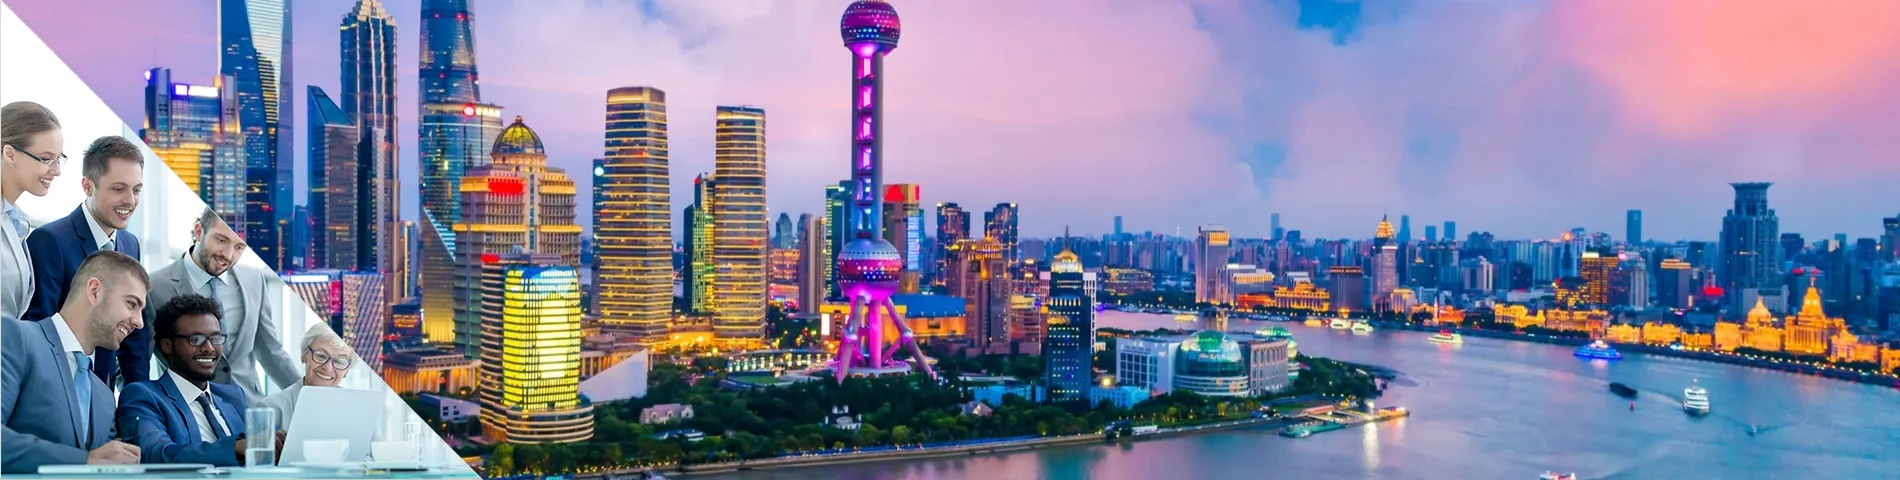 Shanghai - 